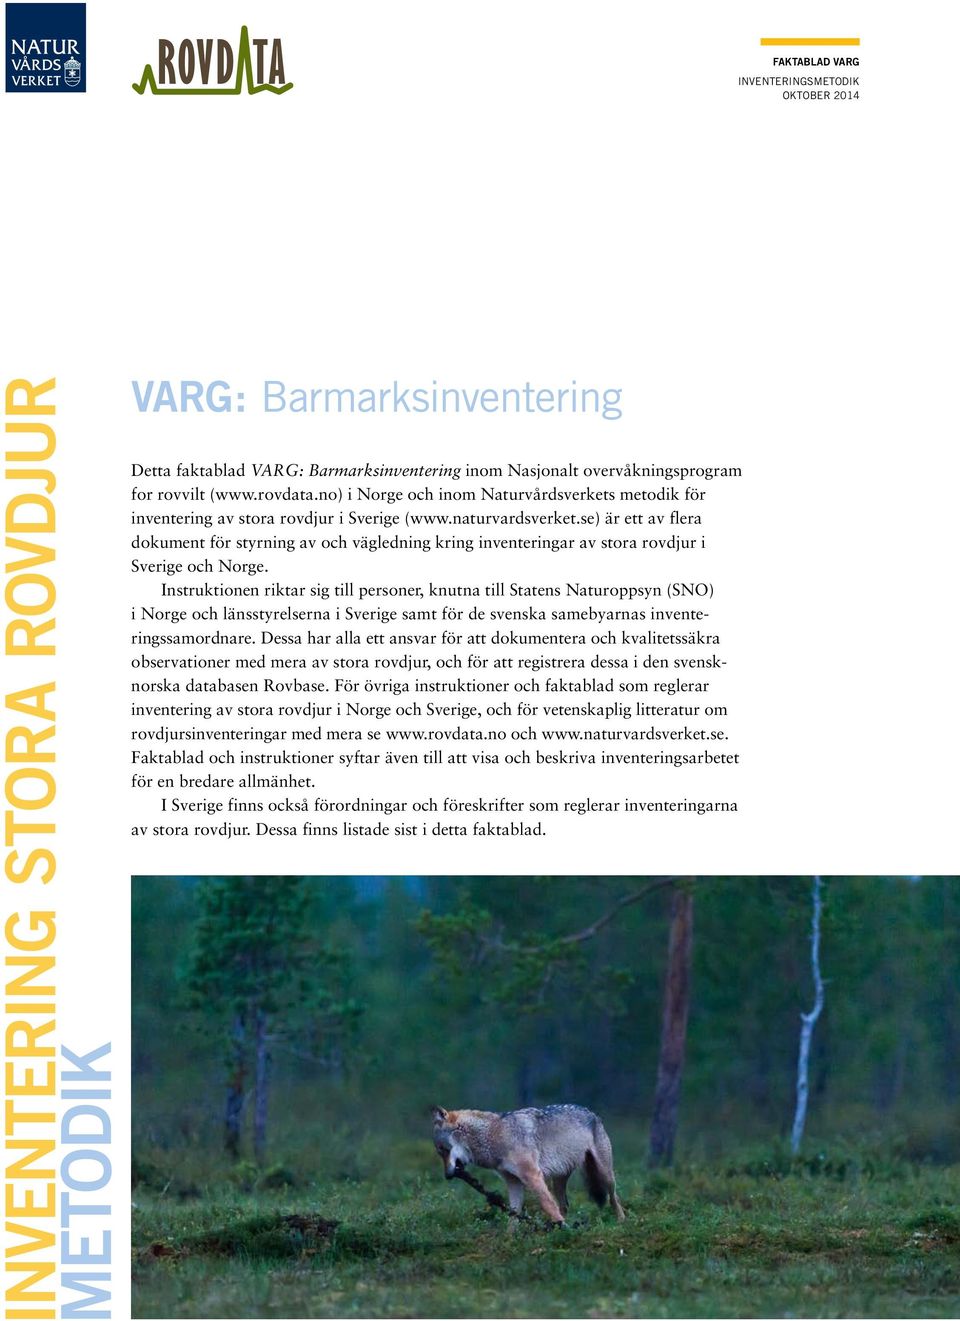 se) är ett av flera dokument för styrning av och vägledning kring inventeringar av stora rovdjur i Sverige och Norge.